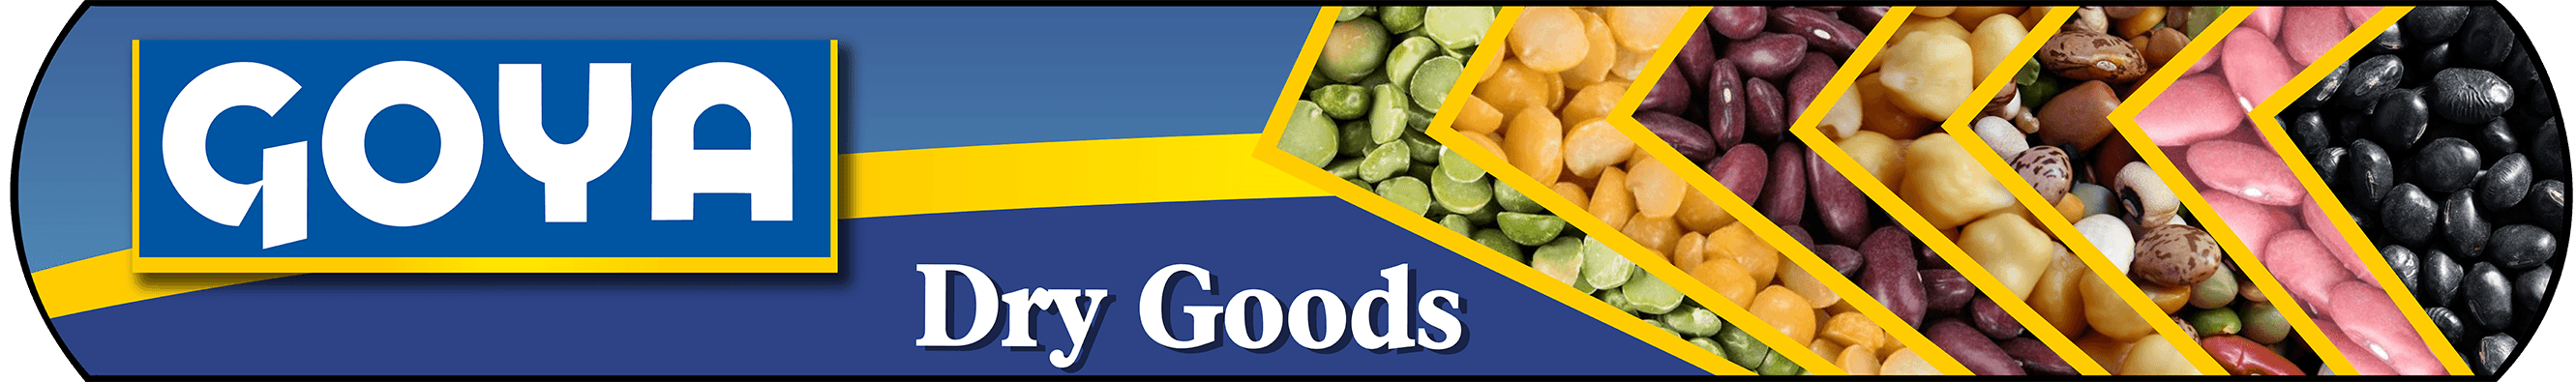 Dry Goods Banner